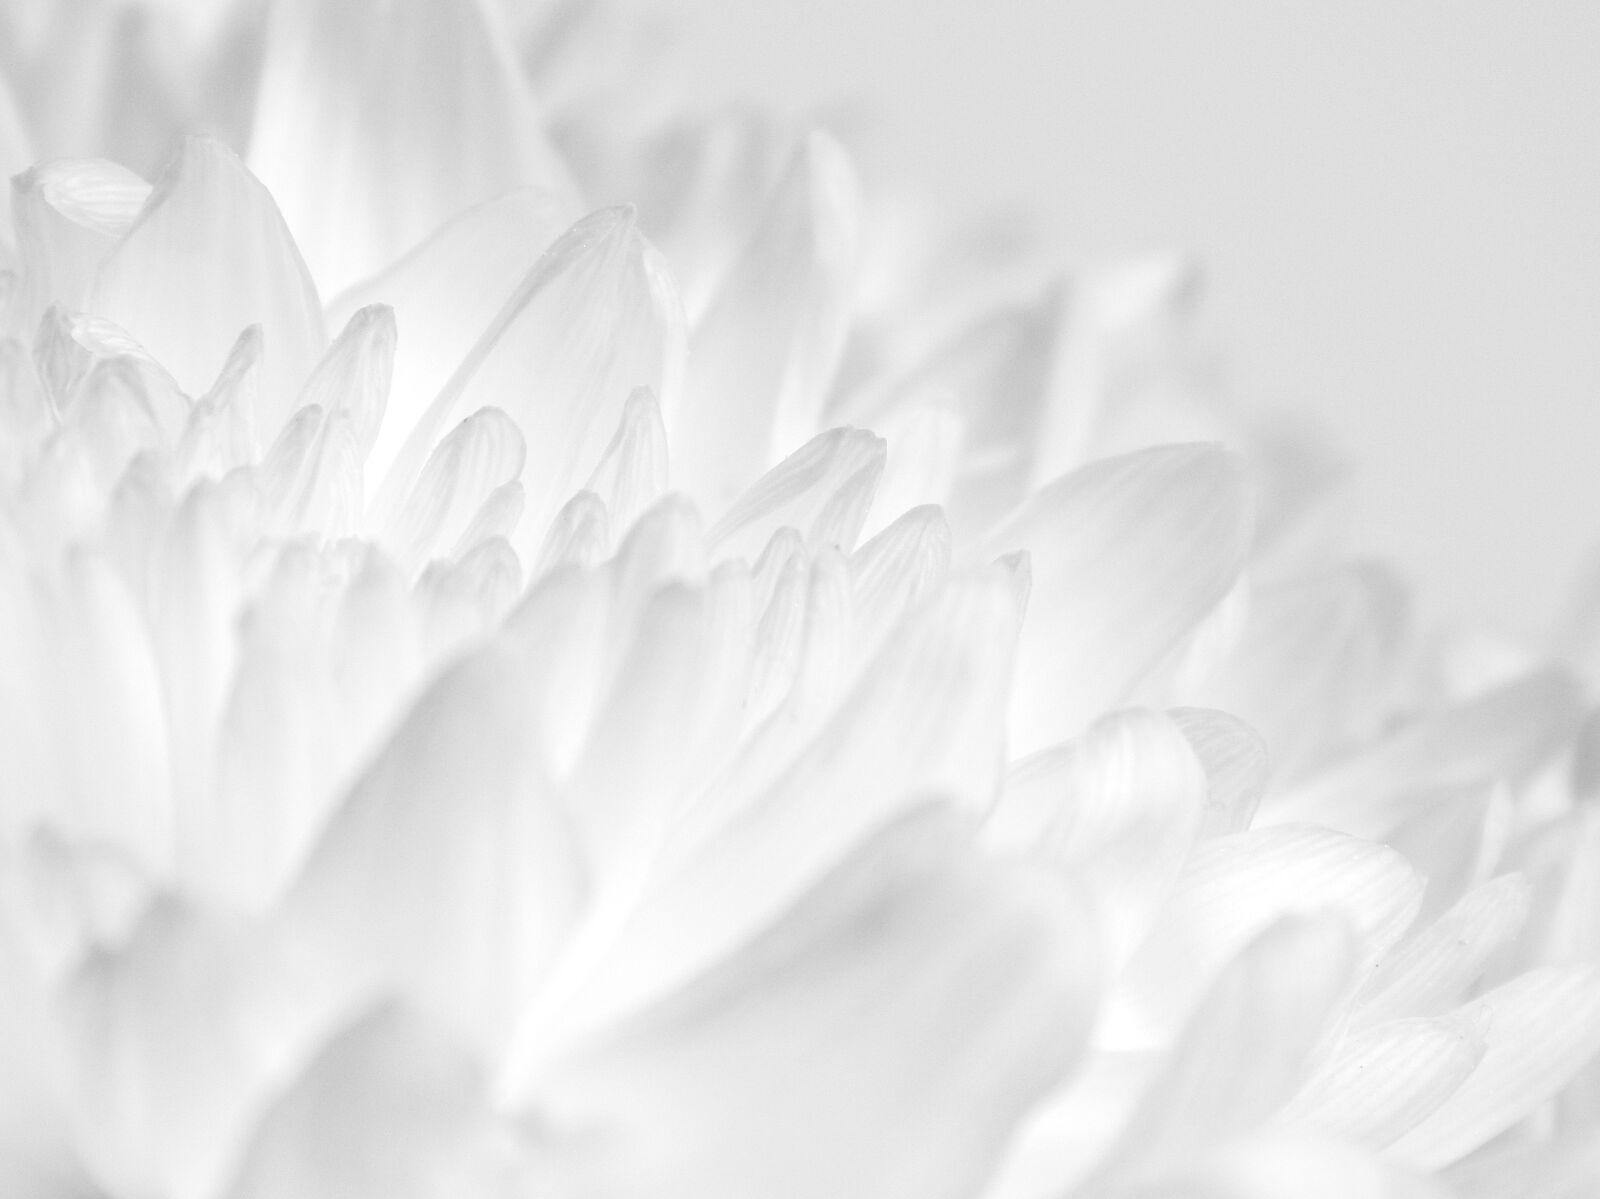 Nikon Coolpix L820 sample photo. White, flower, petals photography